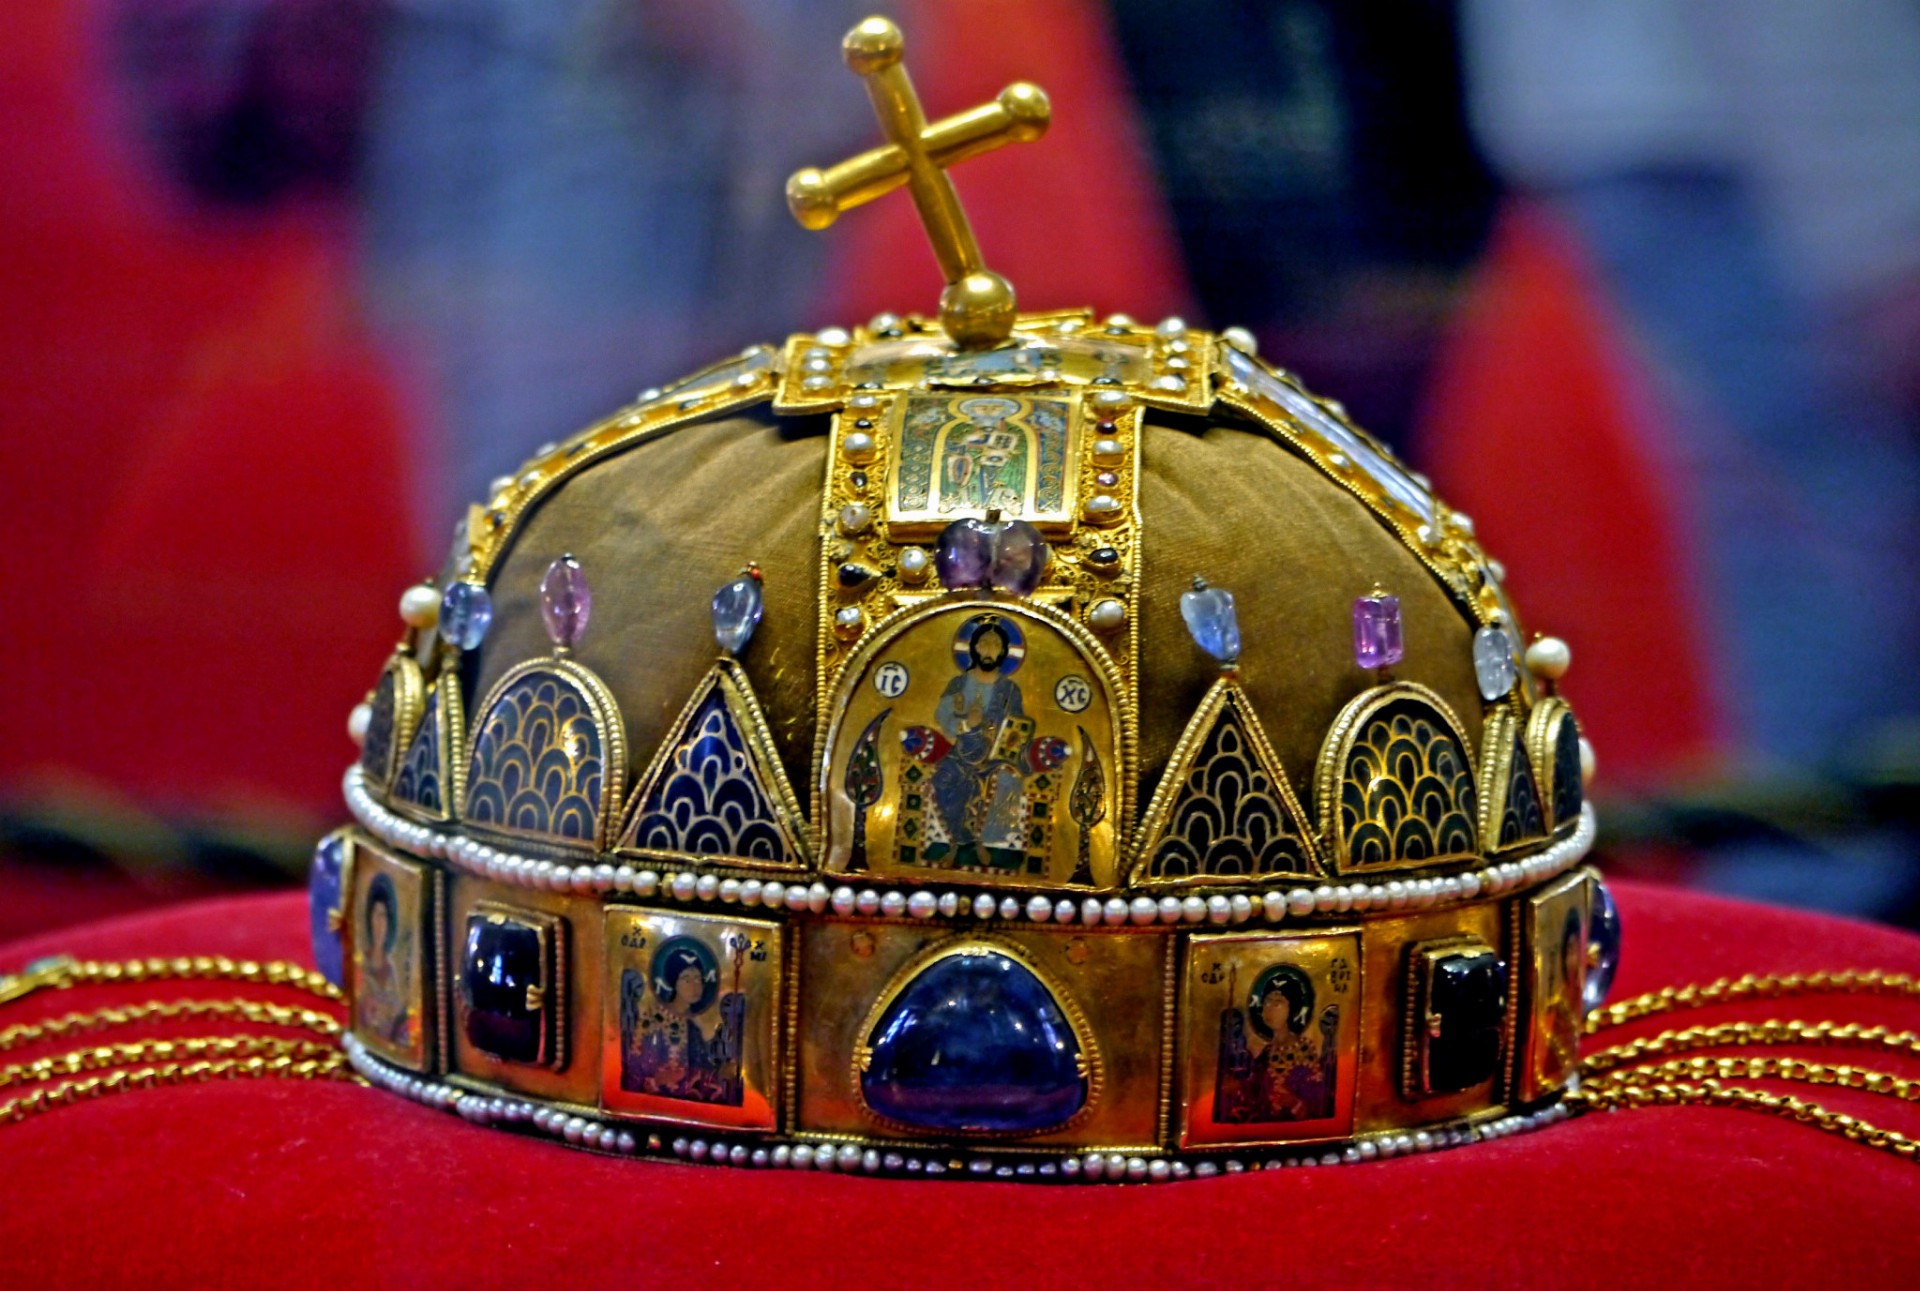 Uhorská koruna bola vyrobená v niekoľkých etapách v priebehu 11. až 13. storočia a vznikla spojením dvoch častí rozličného pôvodu.